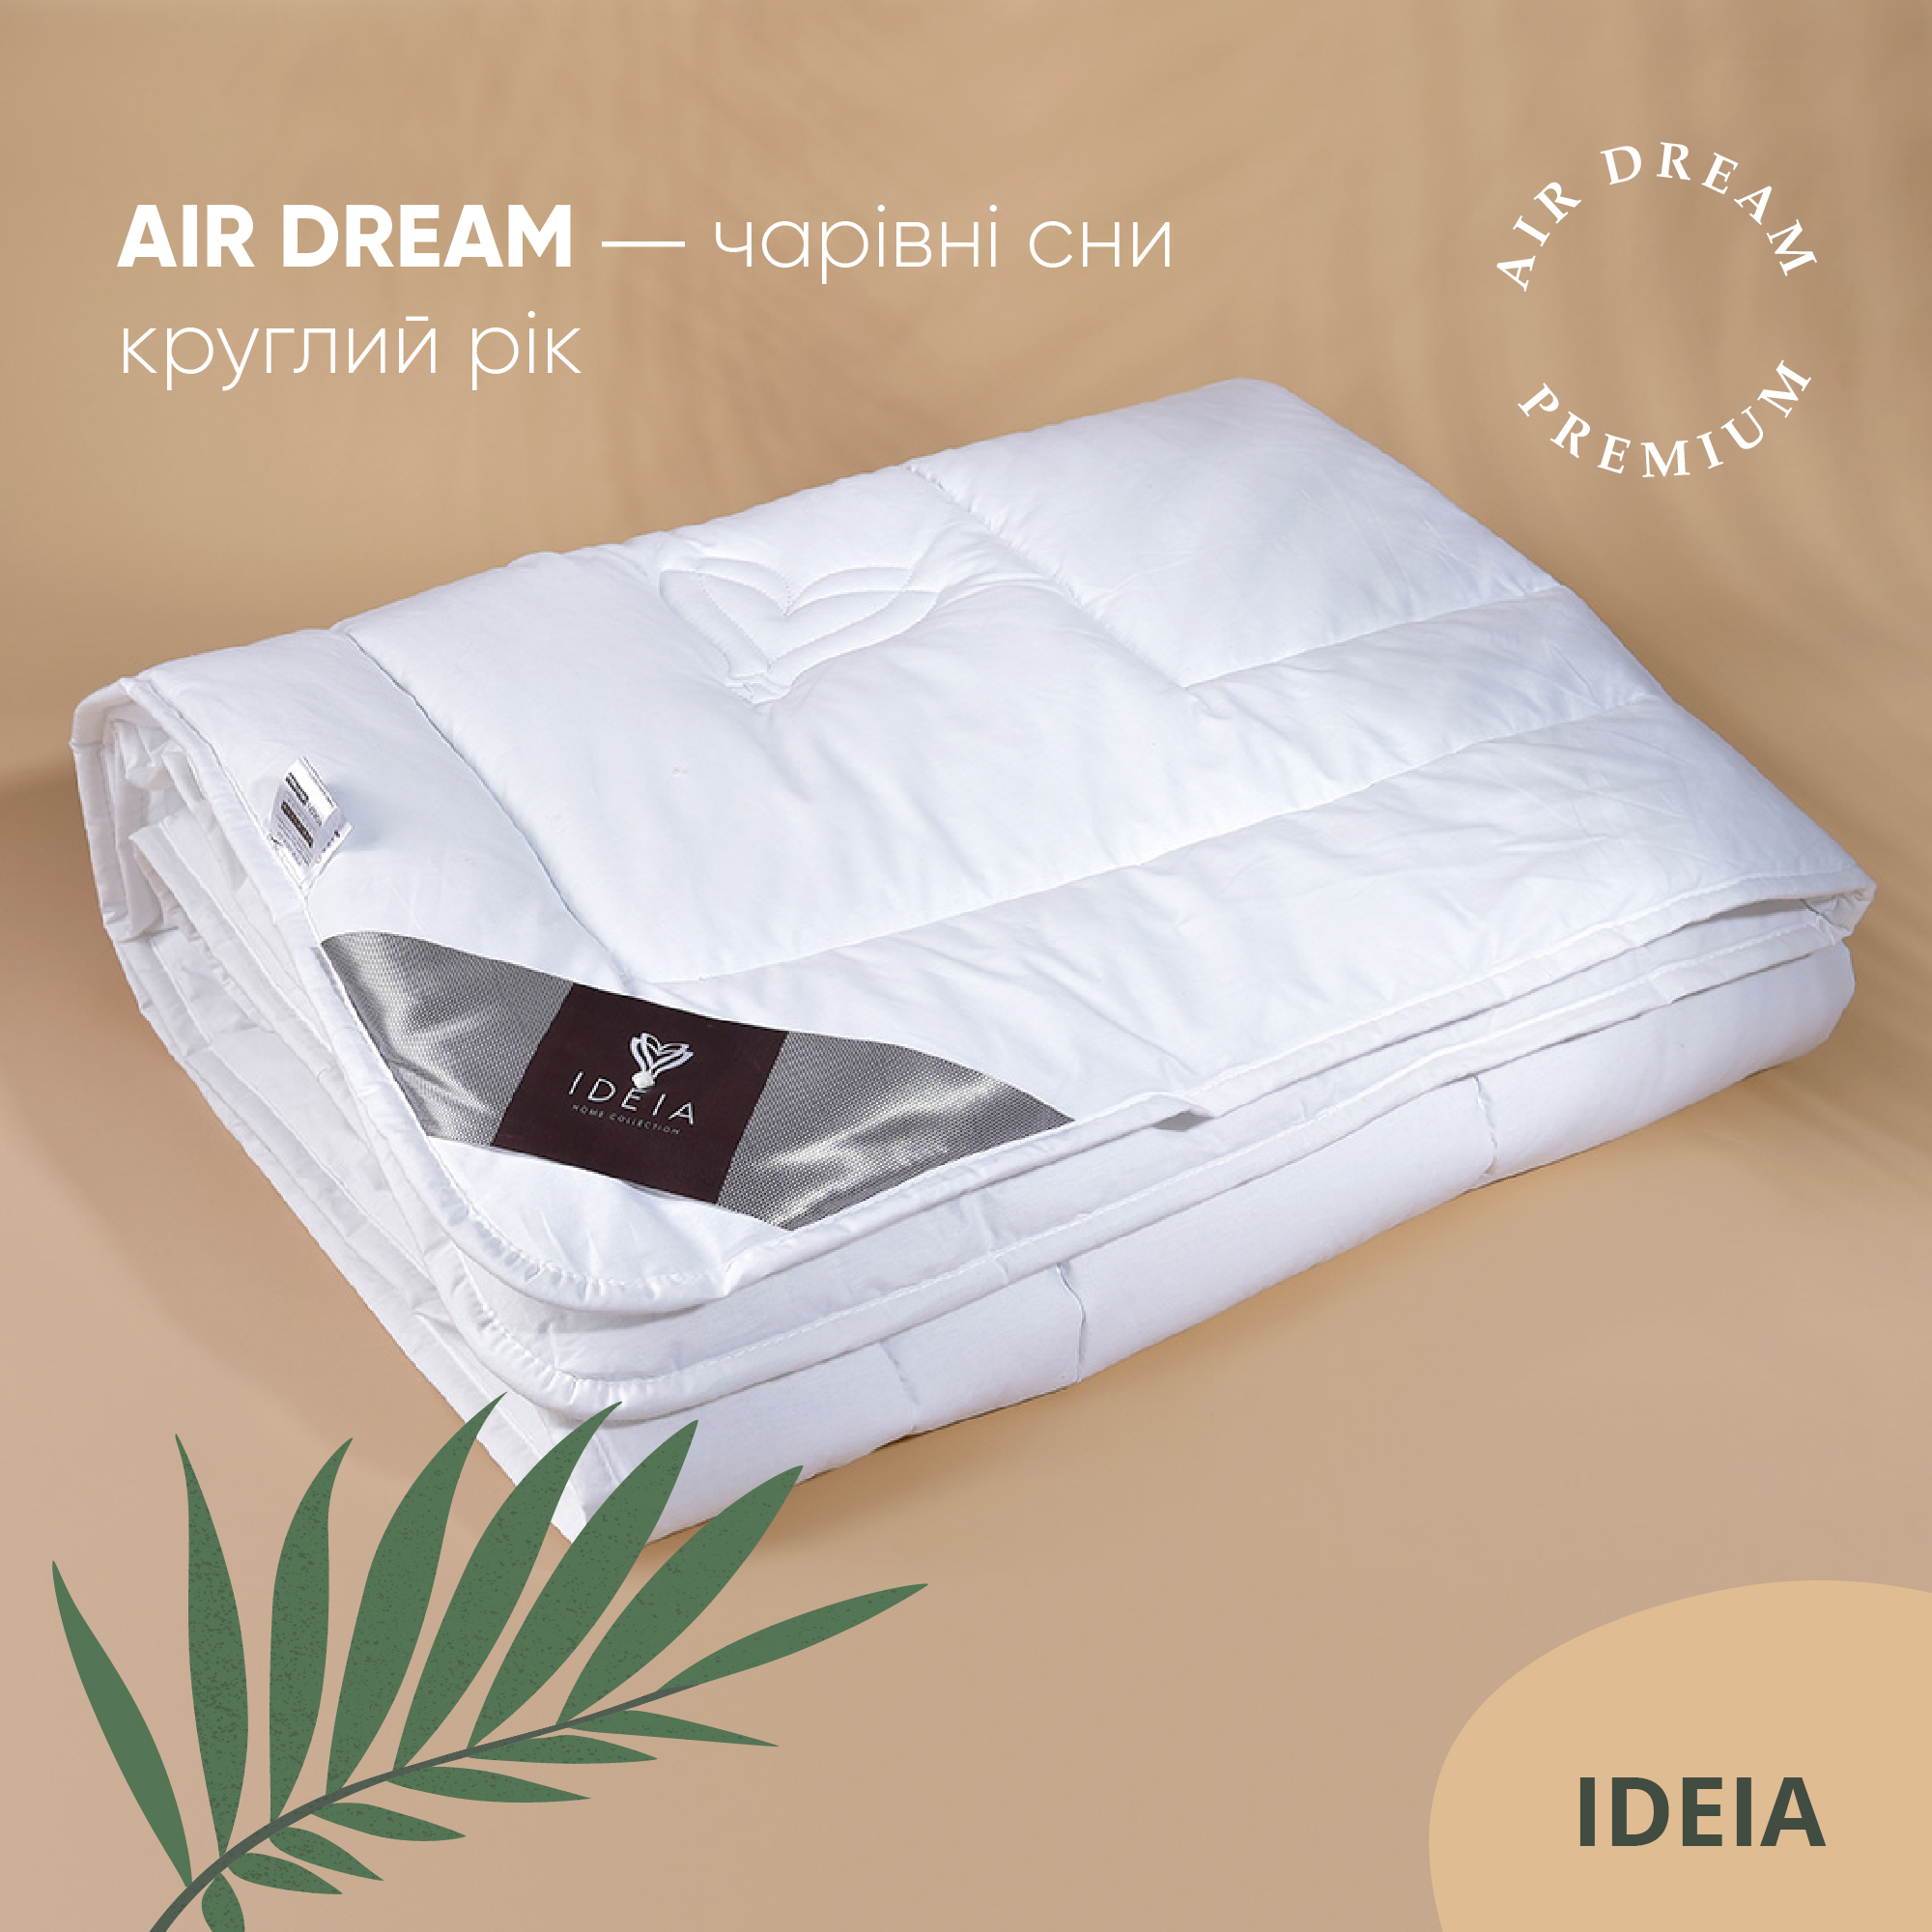 Ковдра Ideia Air Dream Premium літня, 215х155, білий (8-11696) - фото 3